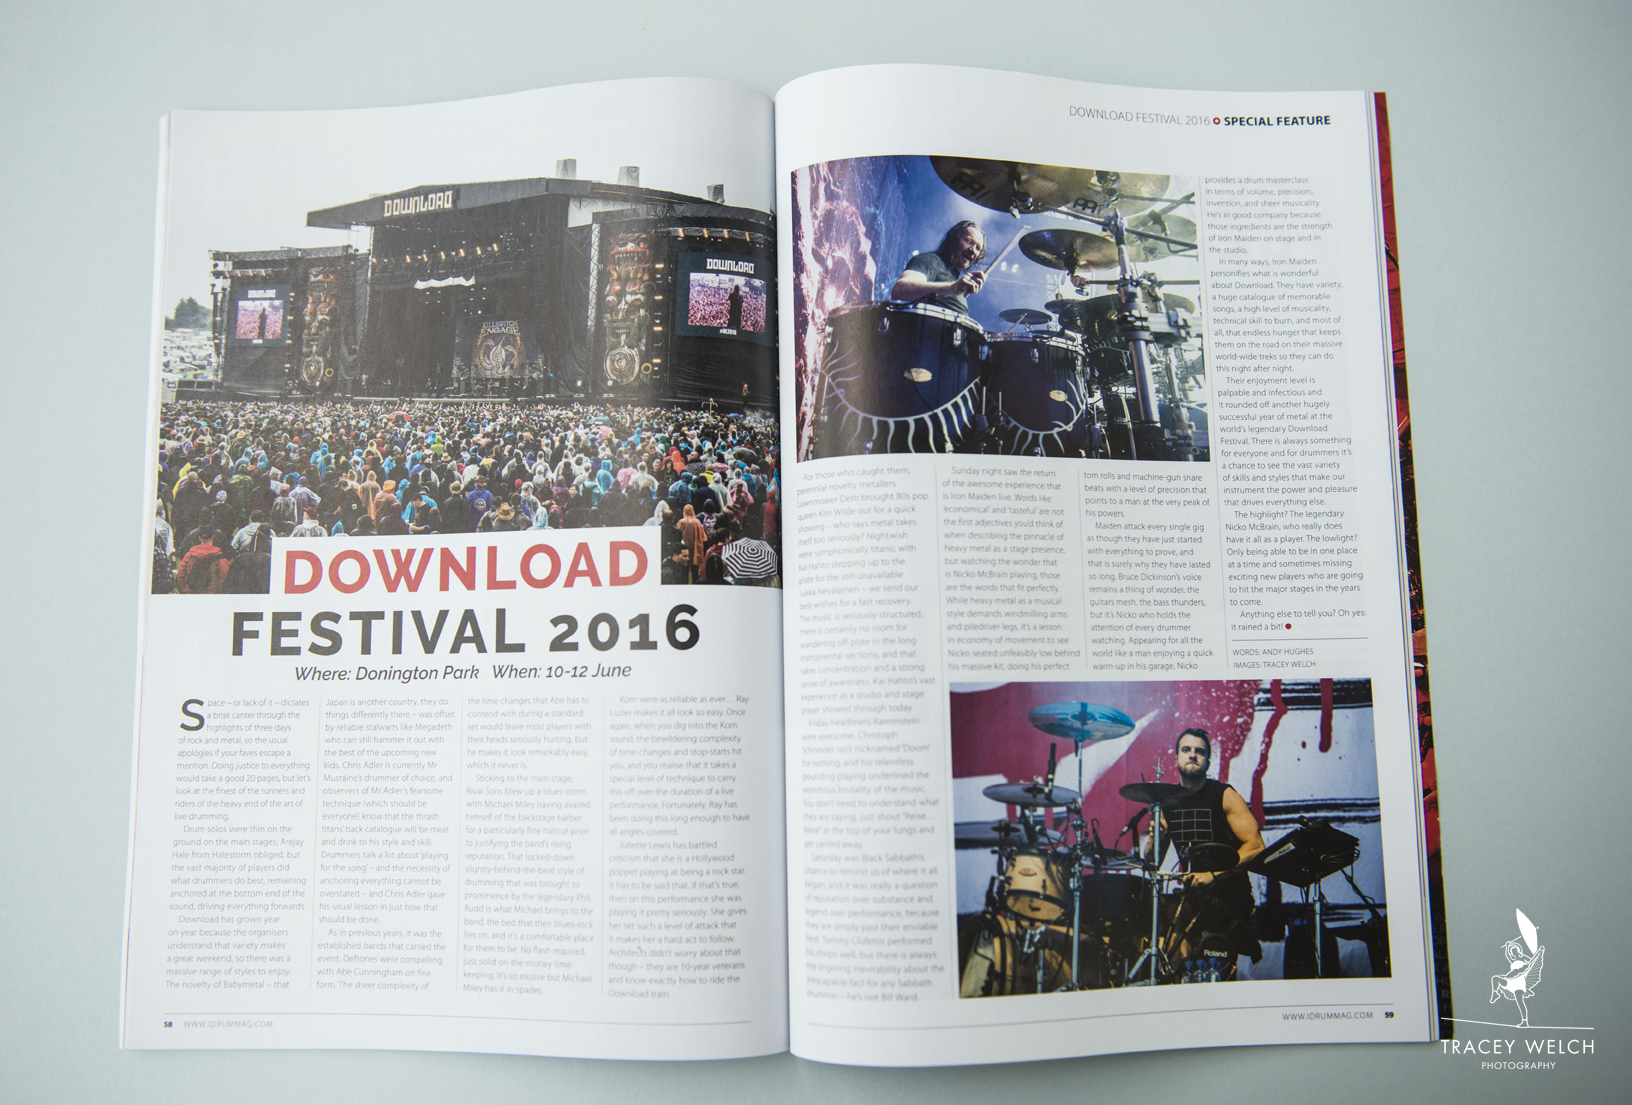 Drummer magazine